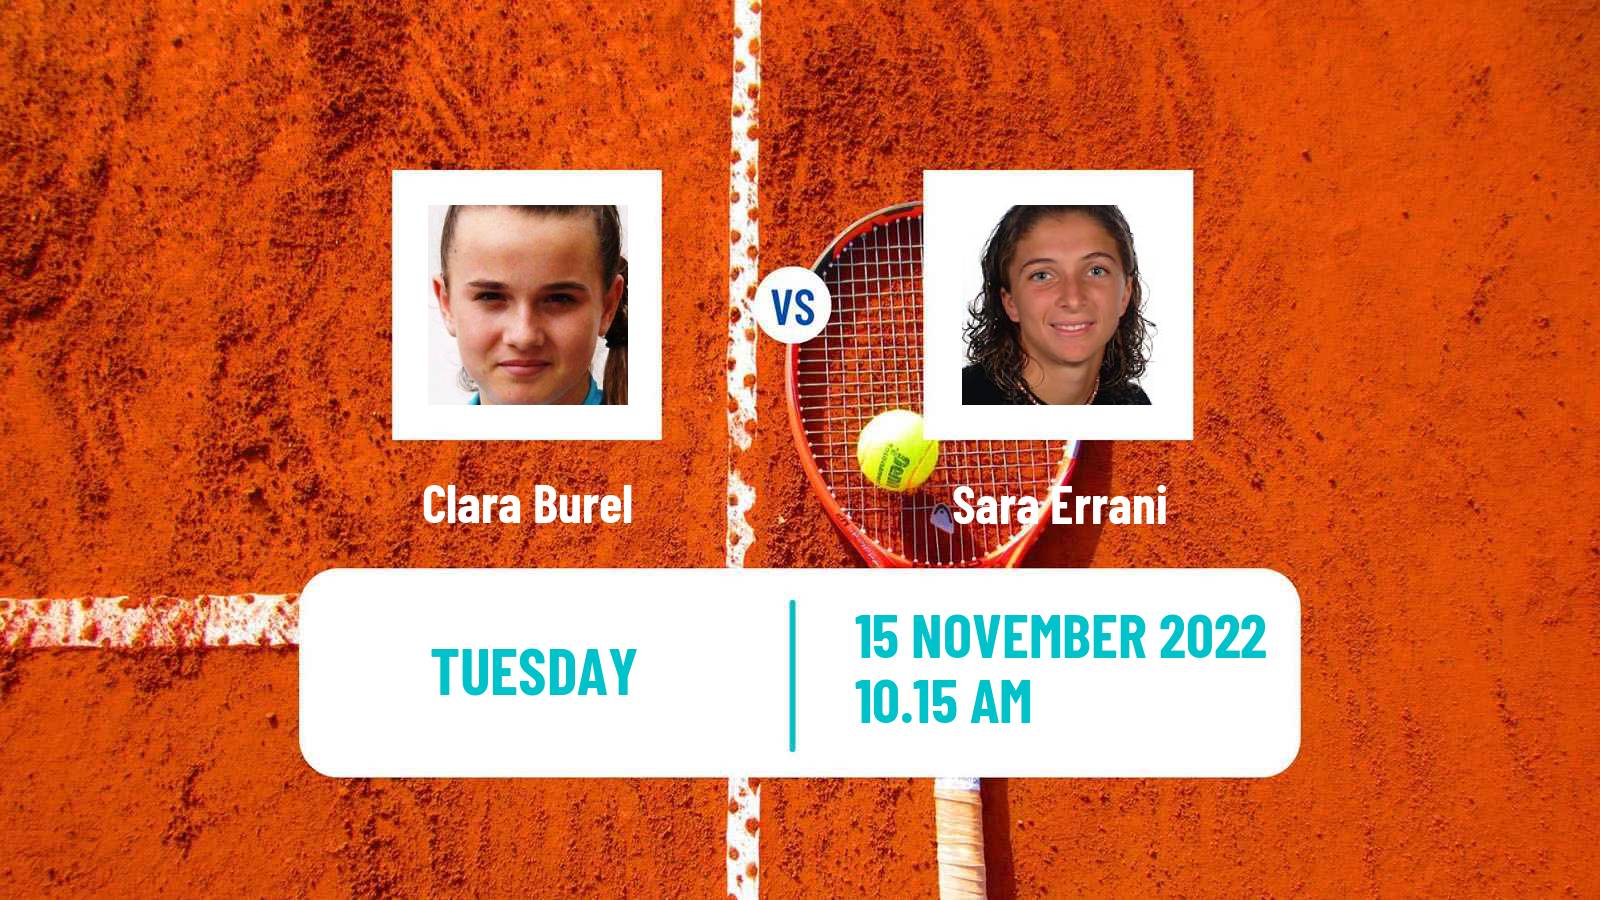 Tennis ATP Challenger Clara Burel - Sara Errani